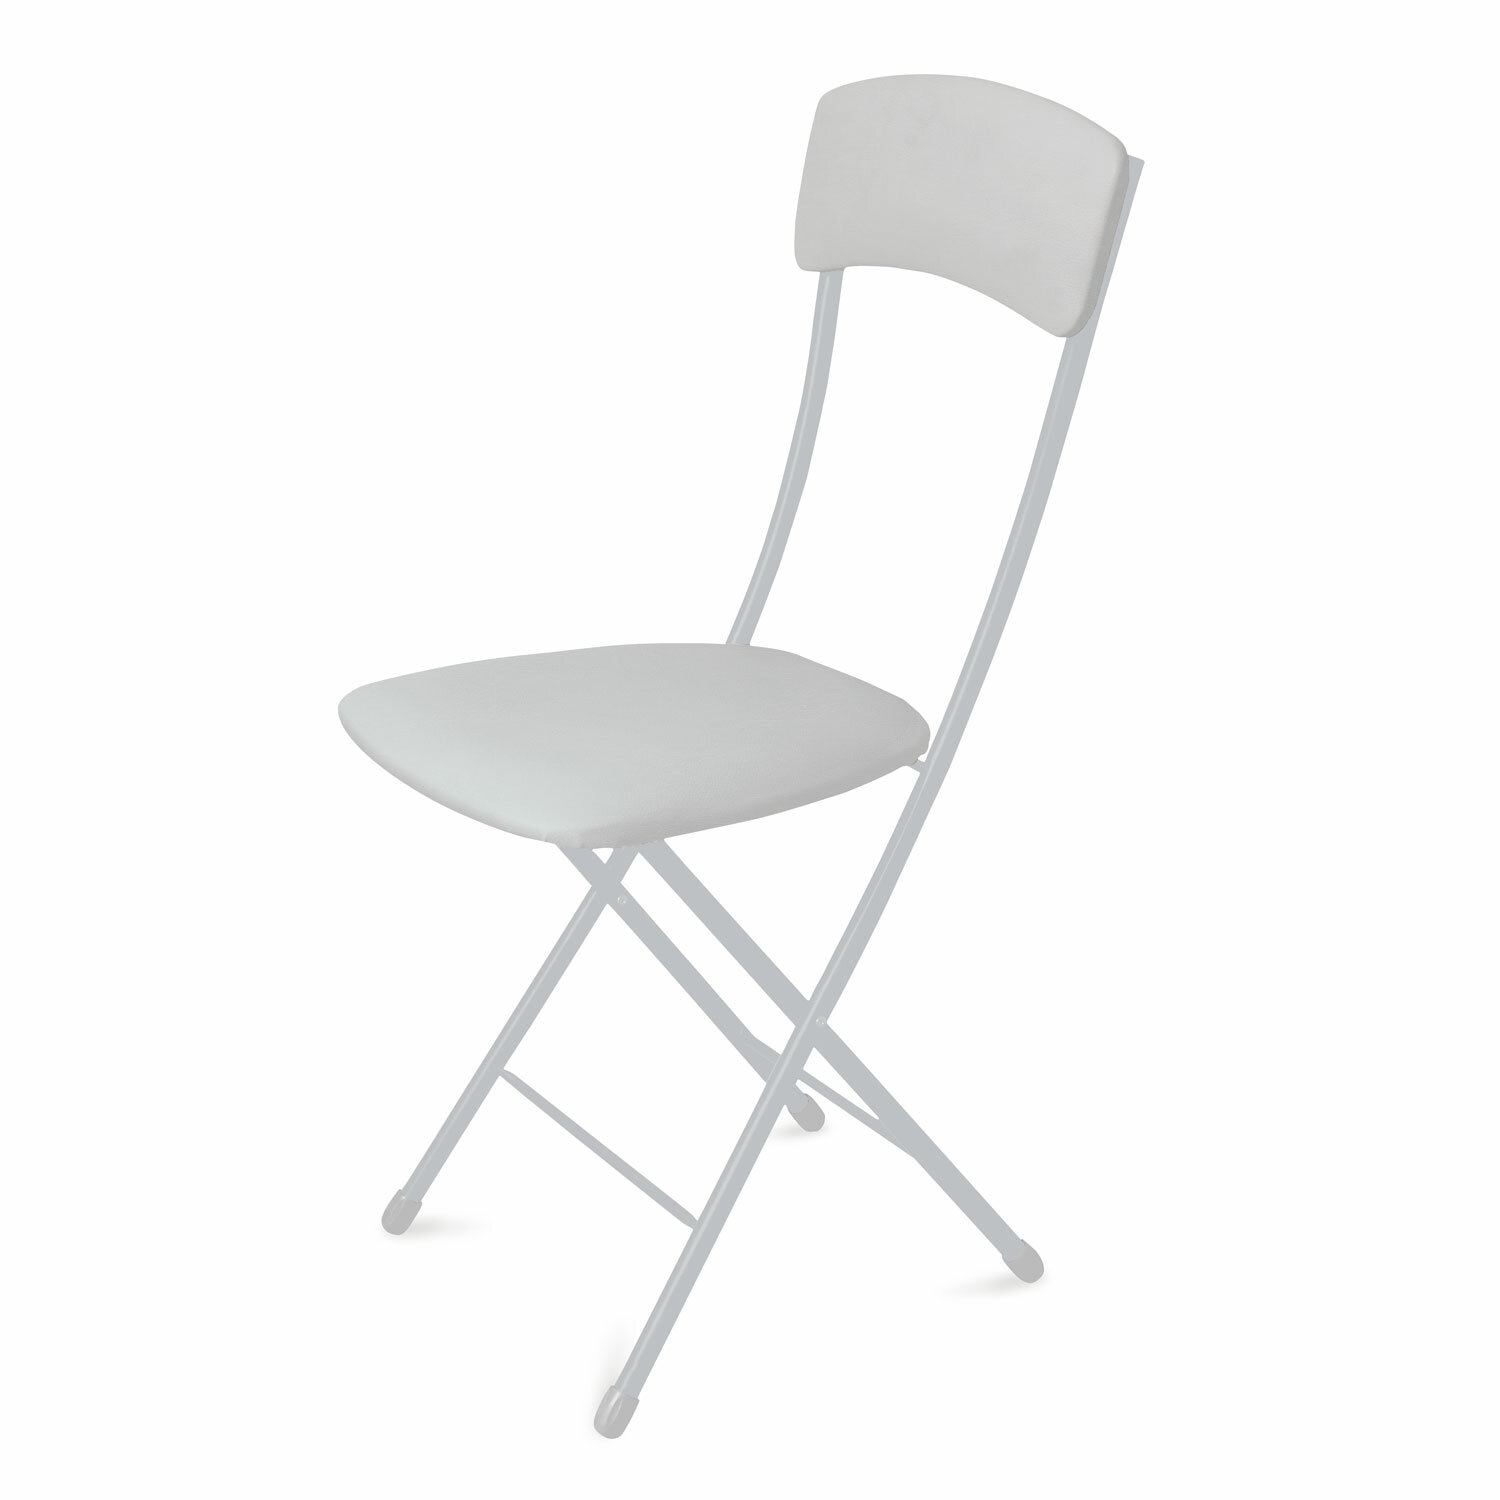 Стул складной НИКА ССН2/12, мягкая спинка, квадратное сиденье, светло-серый/матовый серый